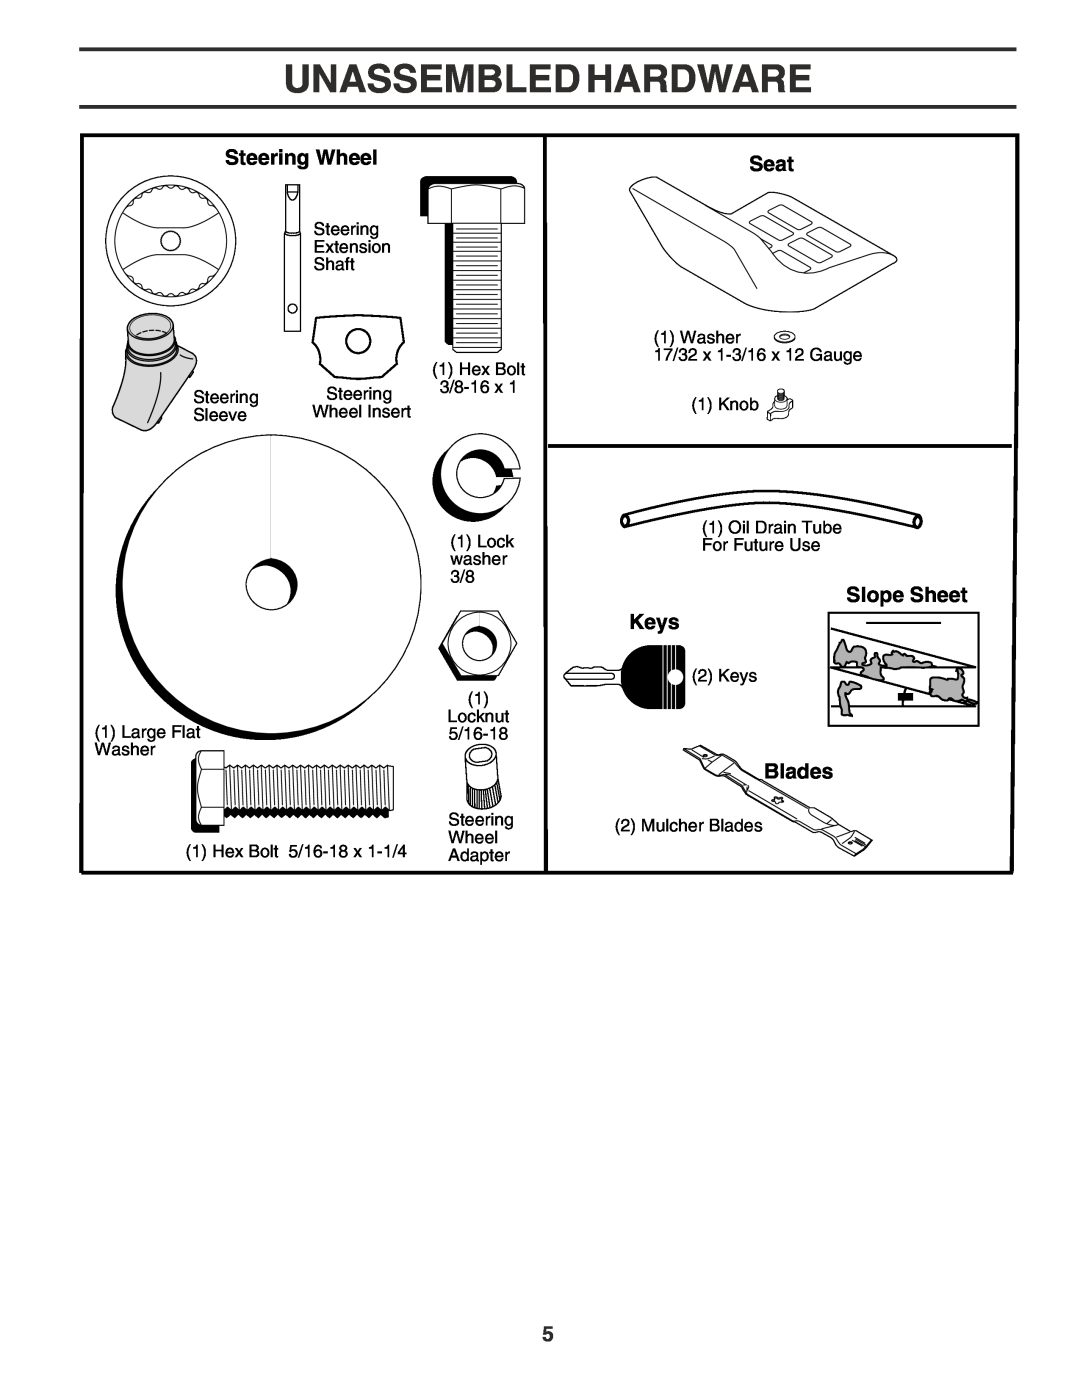 Poulan 181377 owner manual Unassembled Hardware, Steering Wheel, Seat, Slope Sheet Keys, Blades 